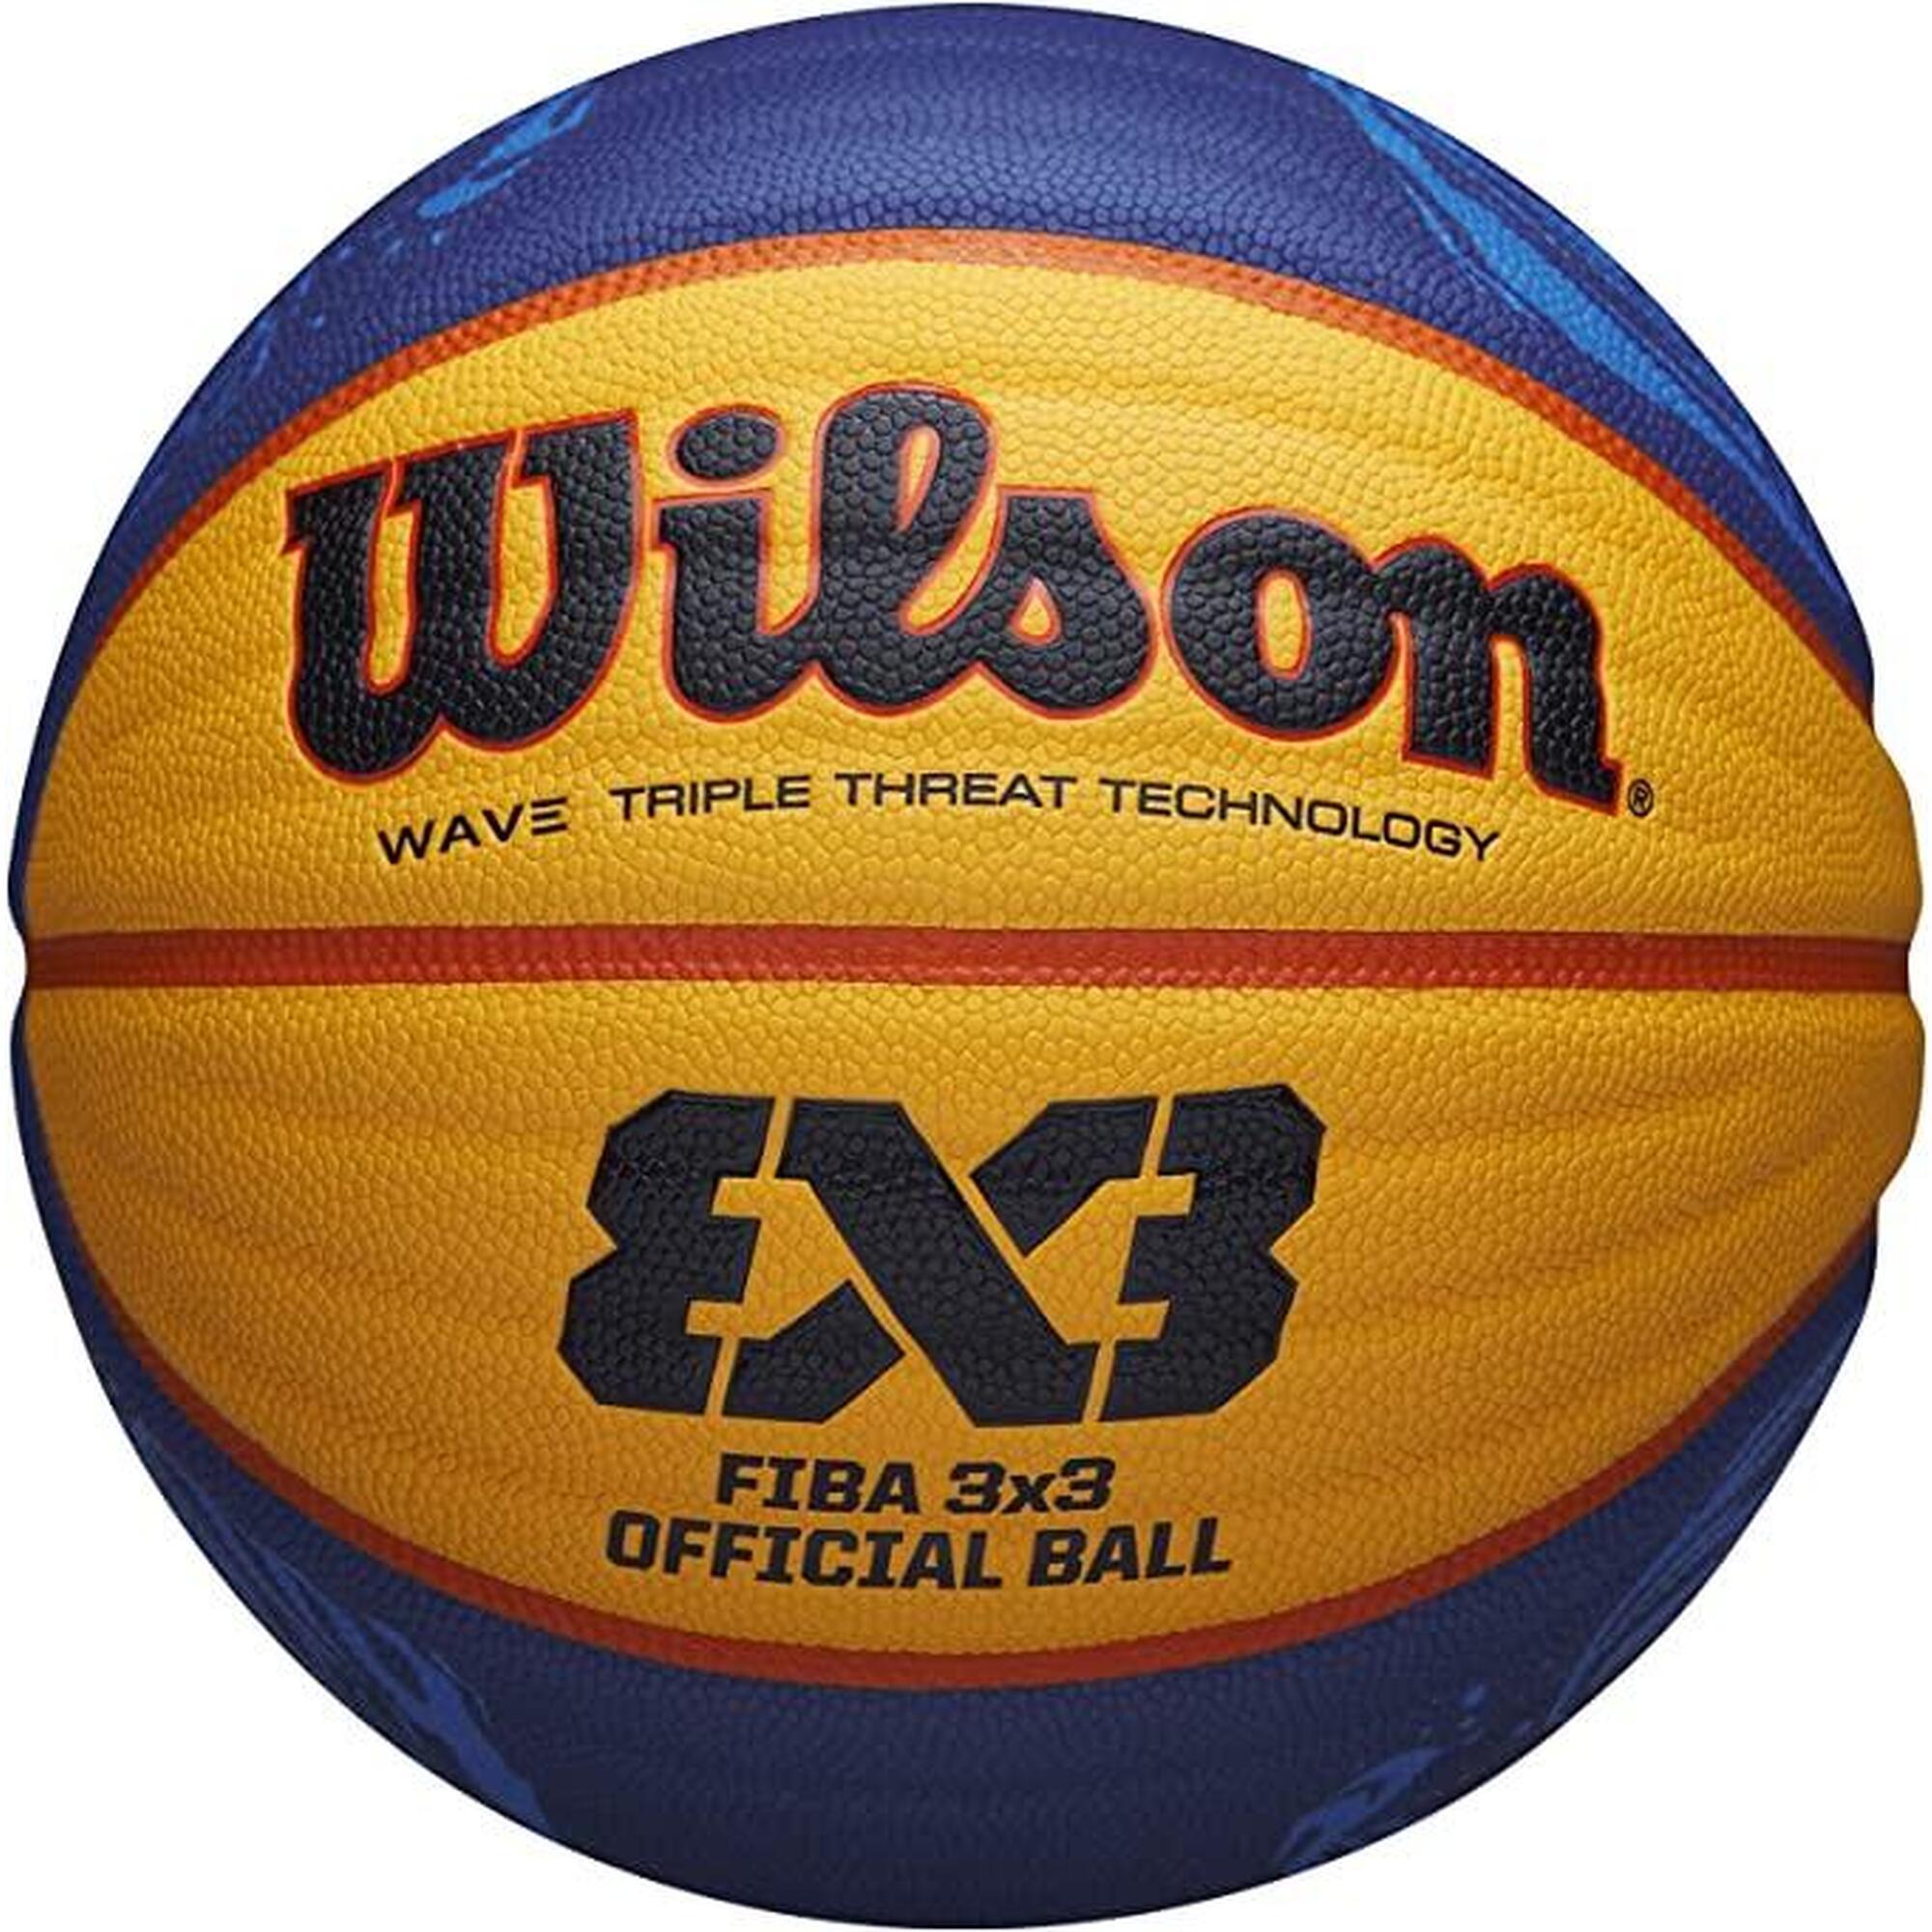 限量版 (PU) FIBA 3x3 官方比賽用6號籃球 - 藍色/黃色